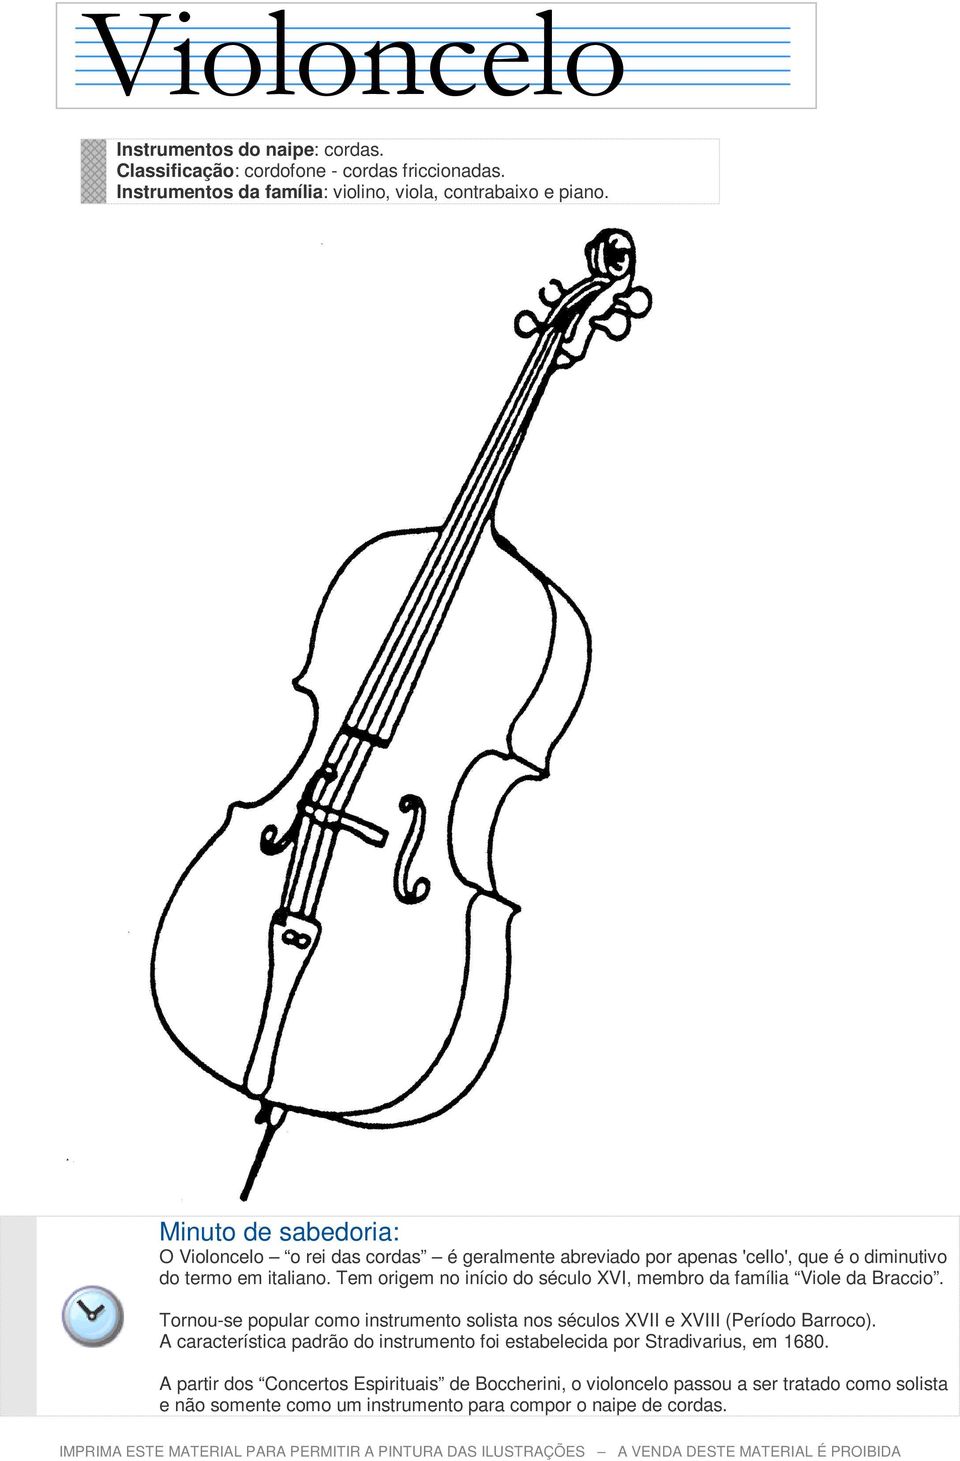 Tem origem no início do século XVI, membro da família Viole da Braccio. Tornou-se popular como instrumento solista nos séculos XVII e XVIII (Período Barroco).